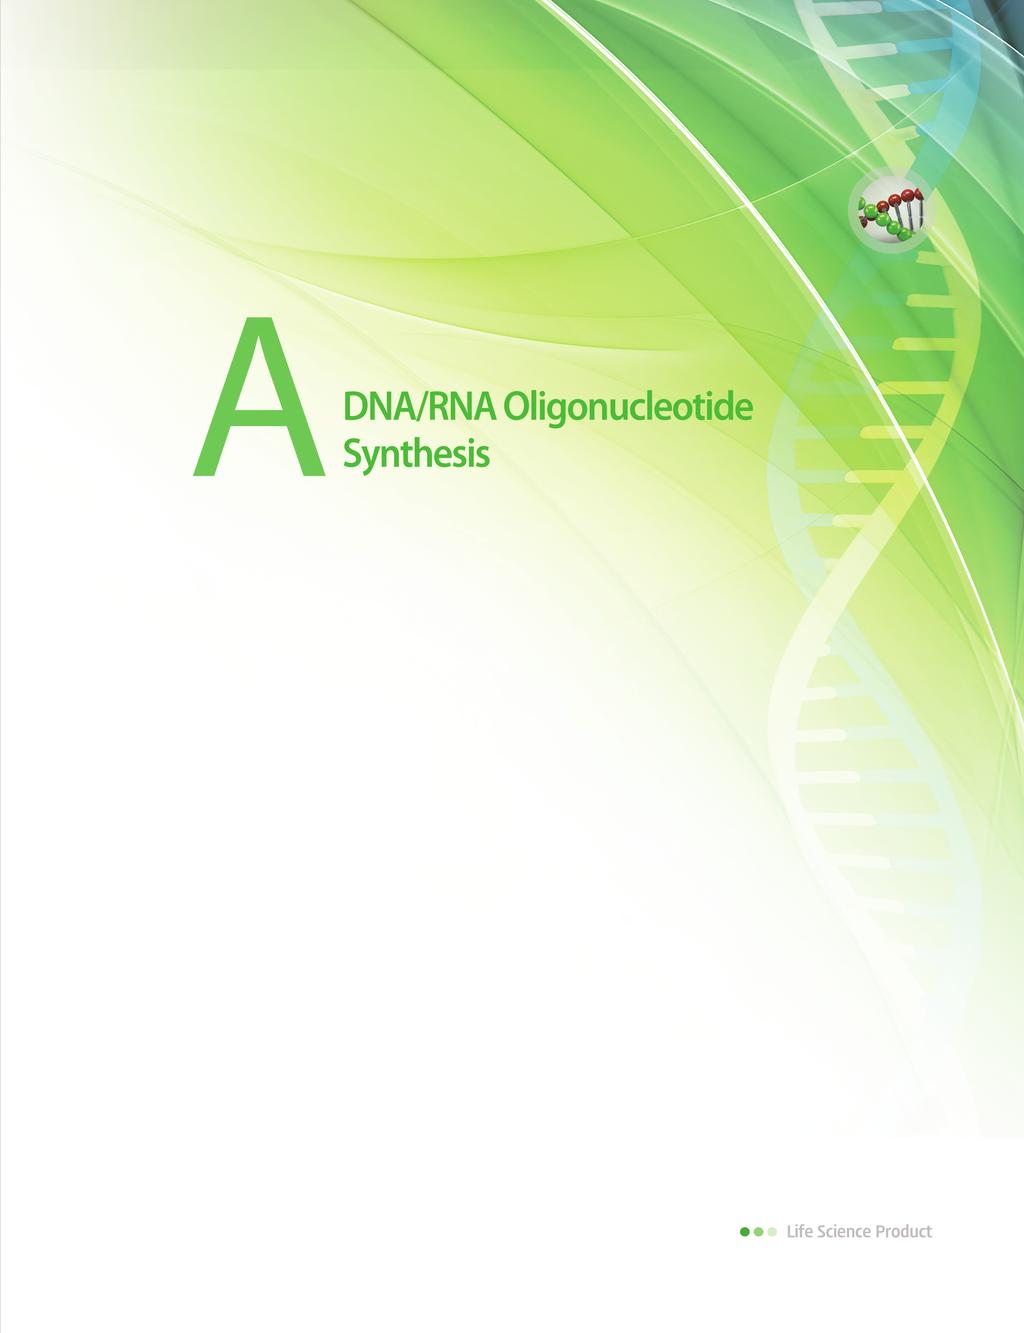 Oligonucleotide - AccuOligo Pre-made Primers QC & Order system DNA Oligonucleotide FAQs User